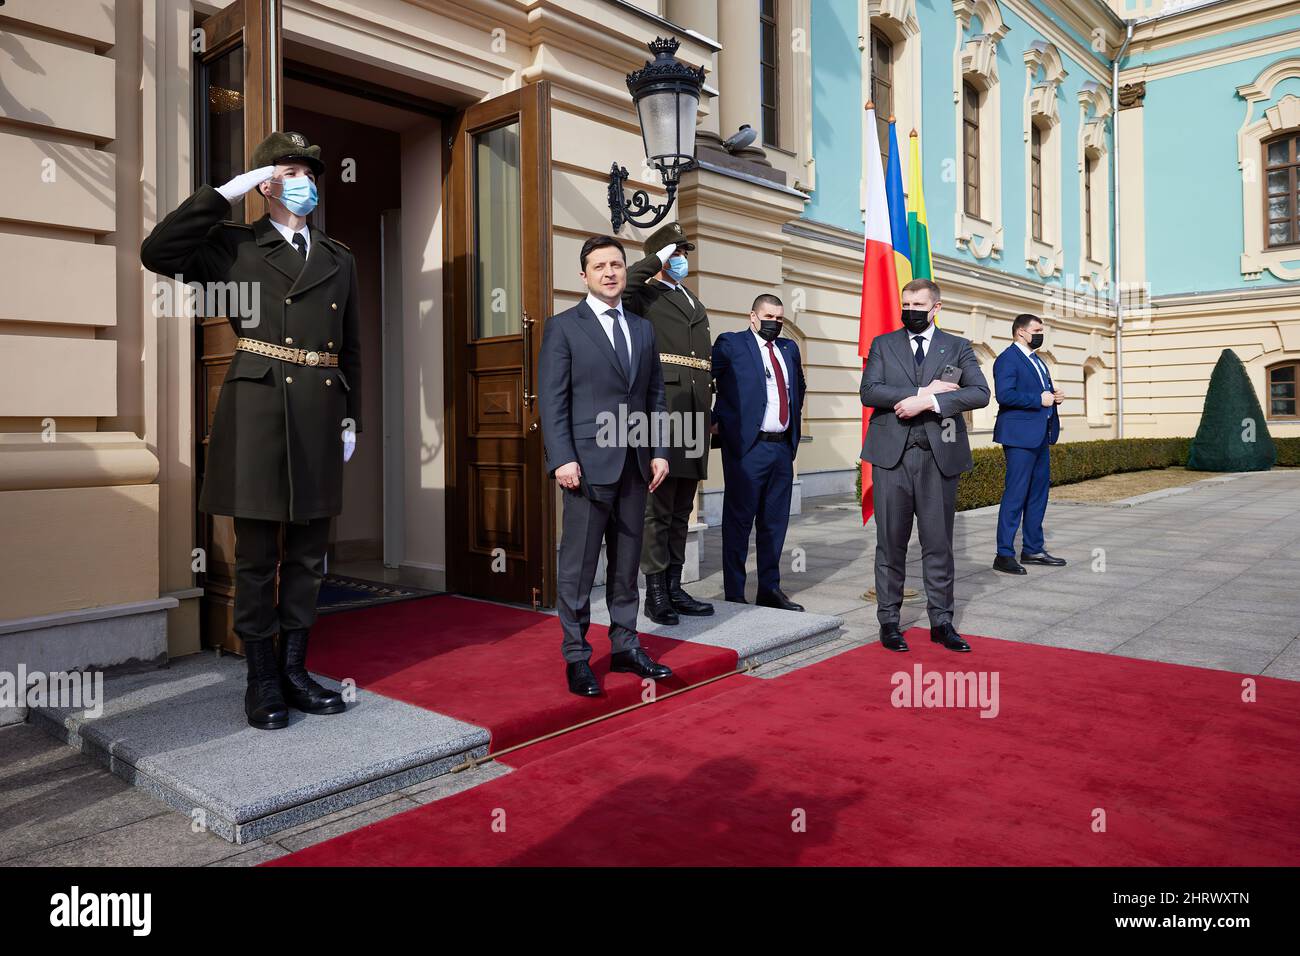 Der ukrainische Präsident Wolodymyr Zelenskyy bereitet sich auf die russische Invasion vor - Februar 2022. Stockfoto